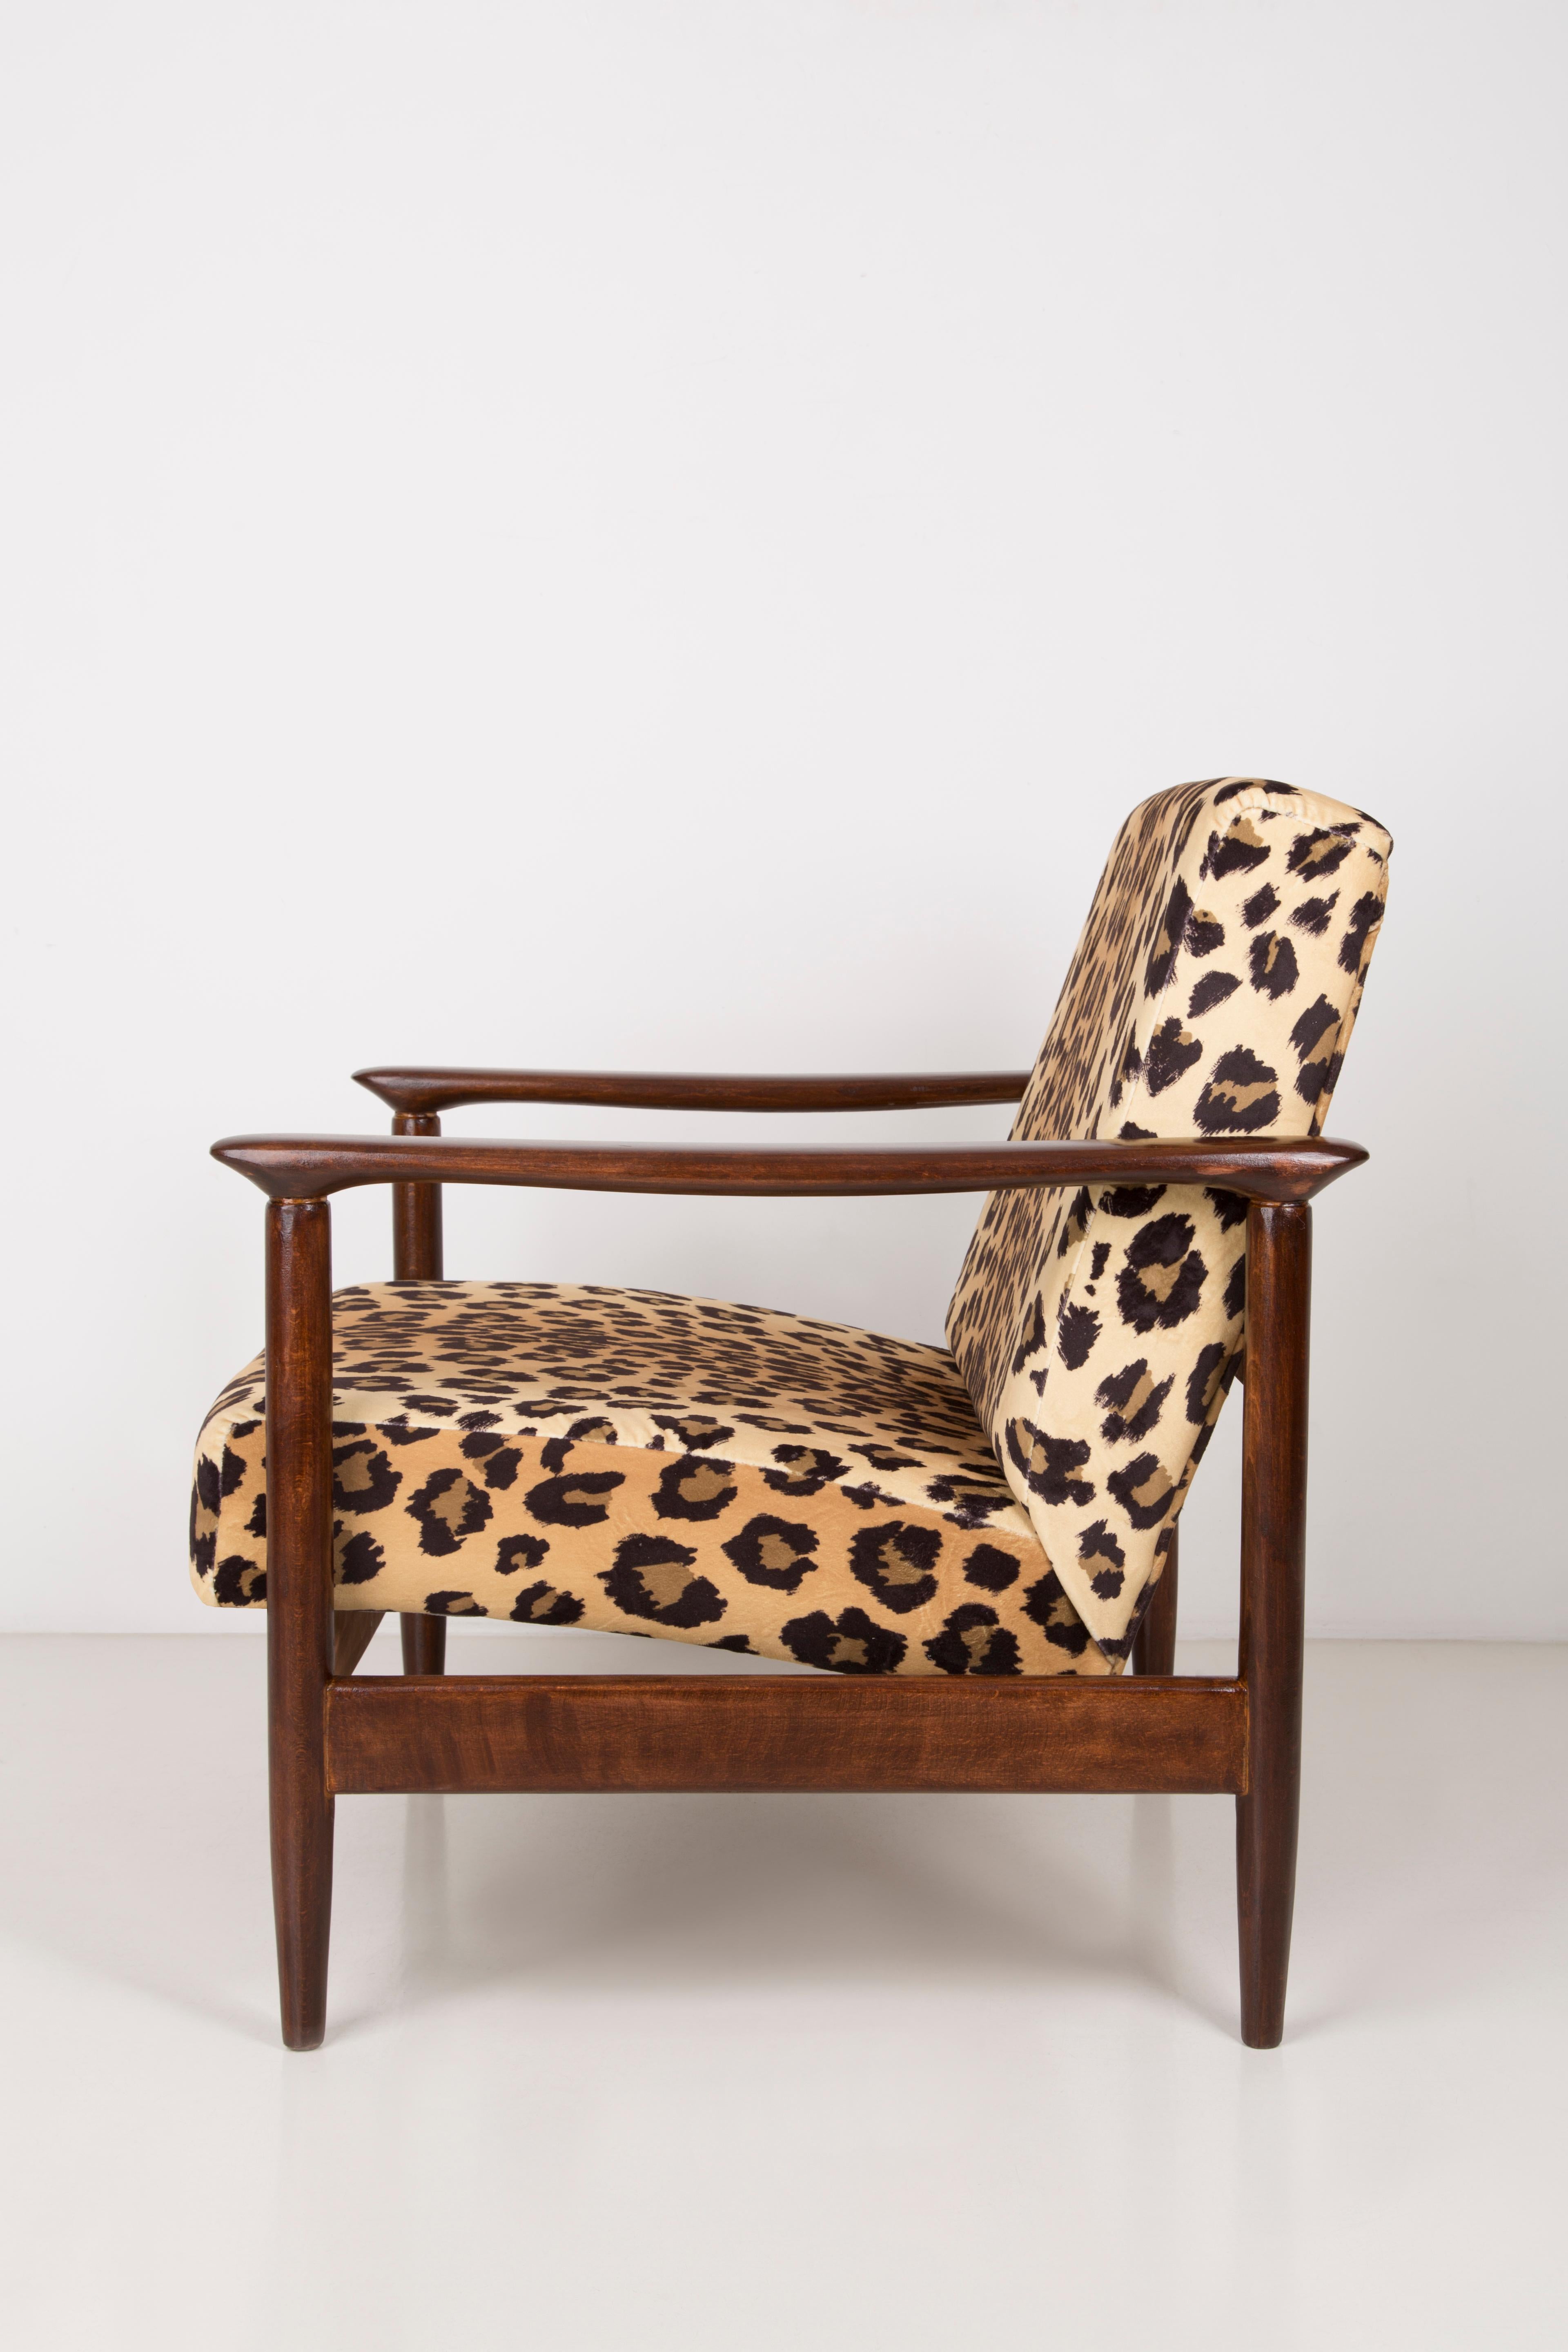 Fait main Paire de fauteuils en velours imprimé léopard, Edmund Homa, GFM-142, années 1960, Pologne en vente